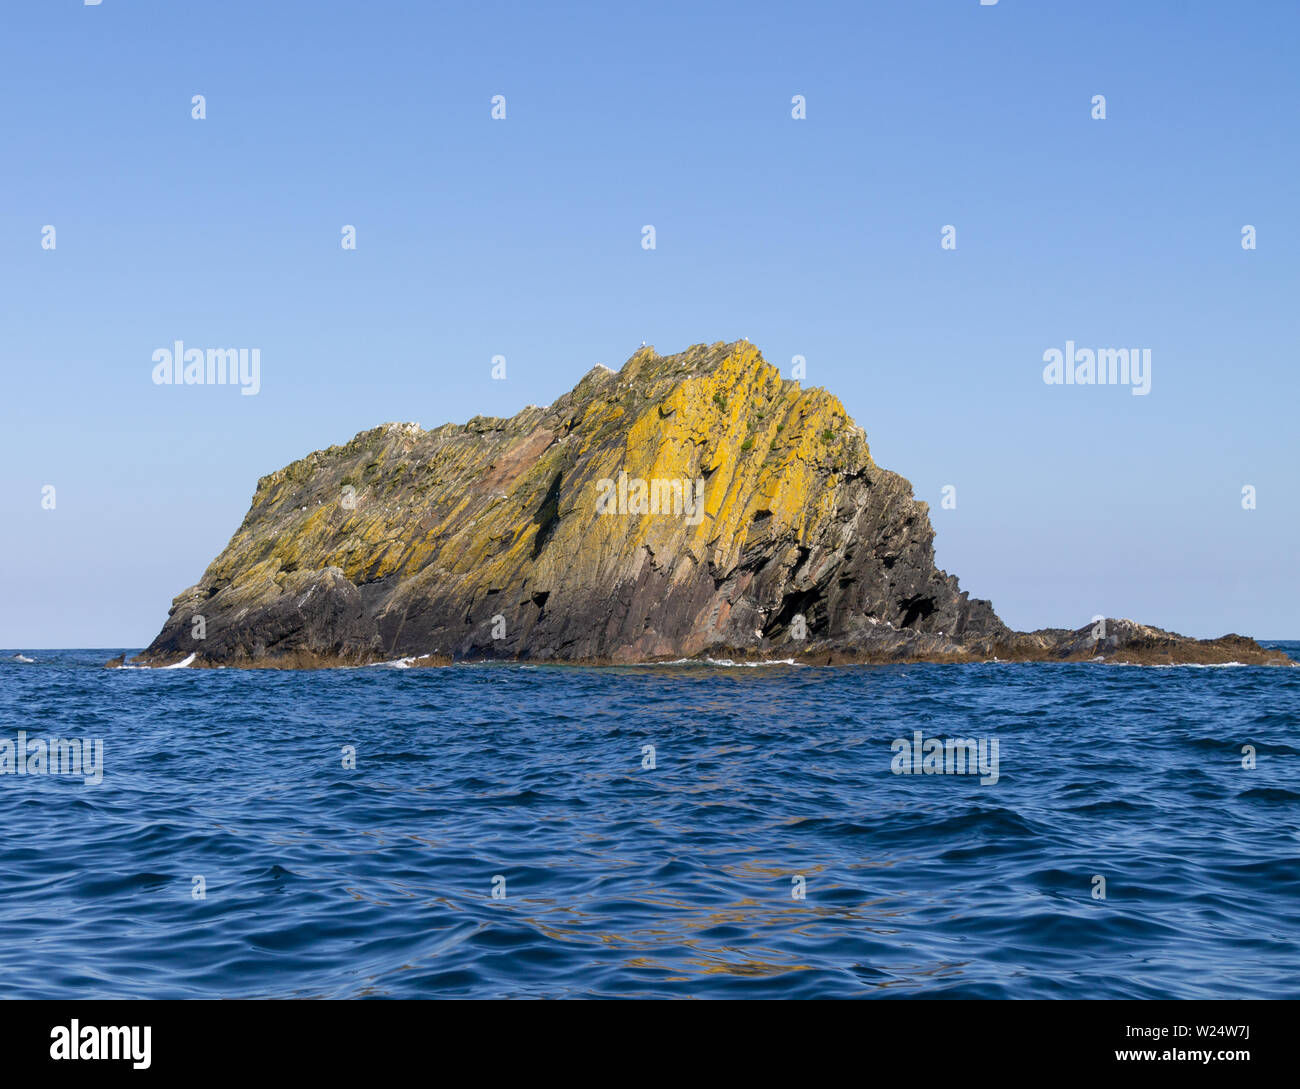 Formación rocosa llamada Roca Negra elevándose desde el Océano Atlántico frente a la Costa Oeste de Irlanda Foto de stock